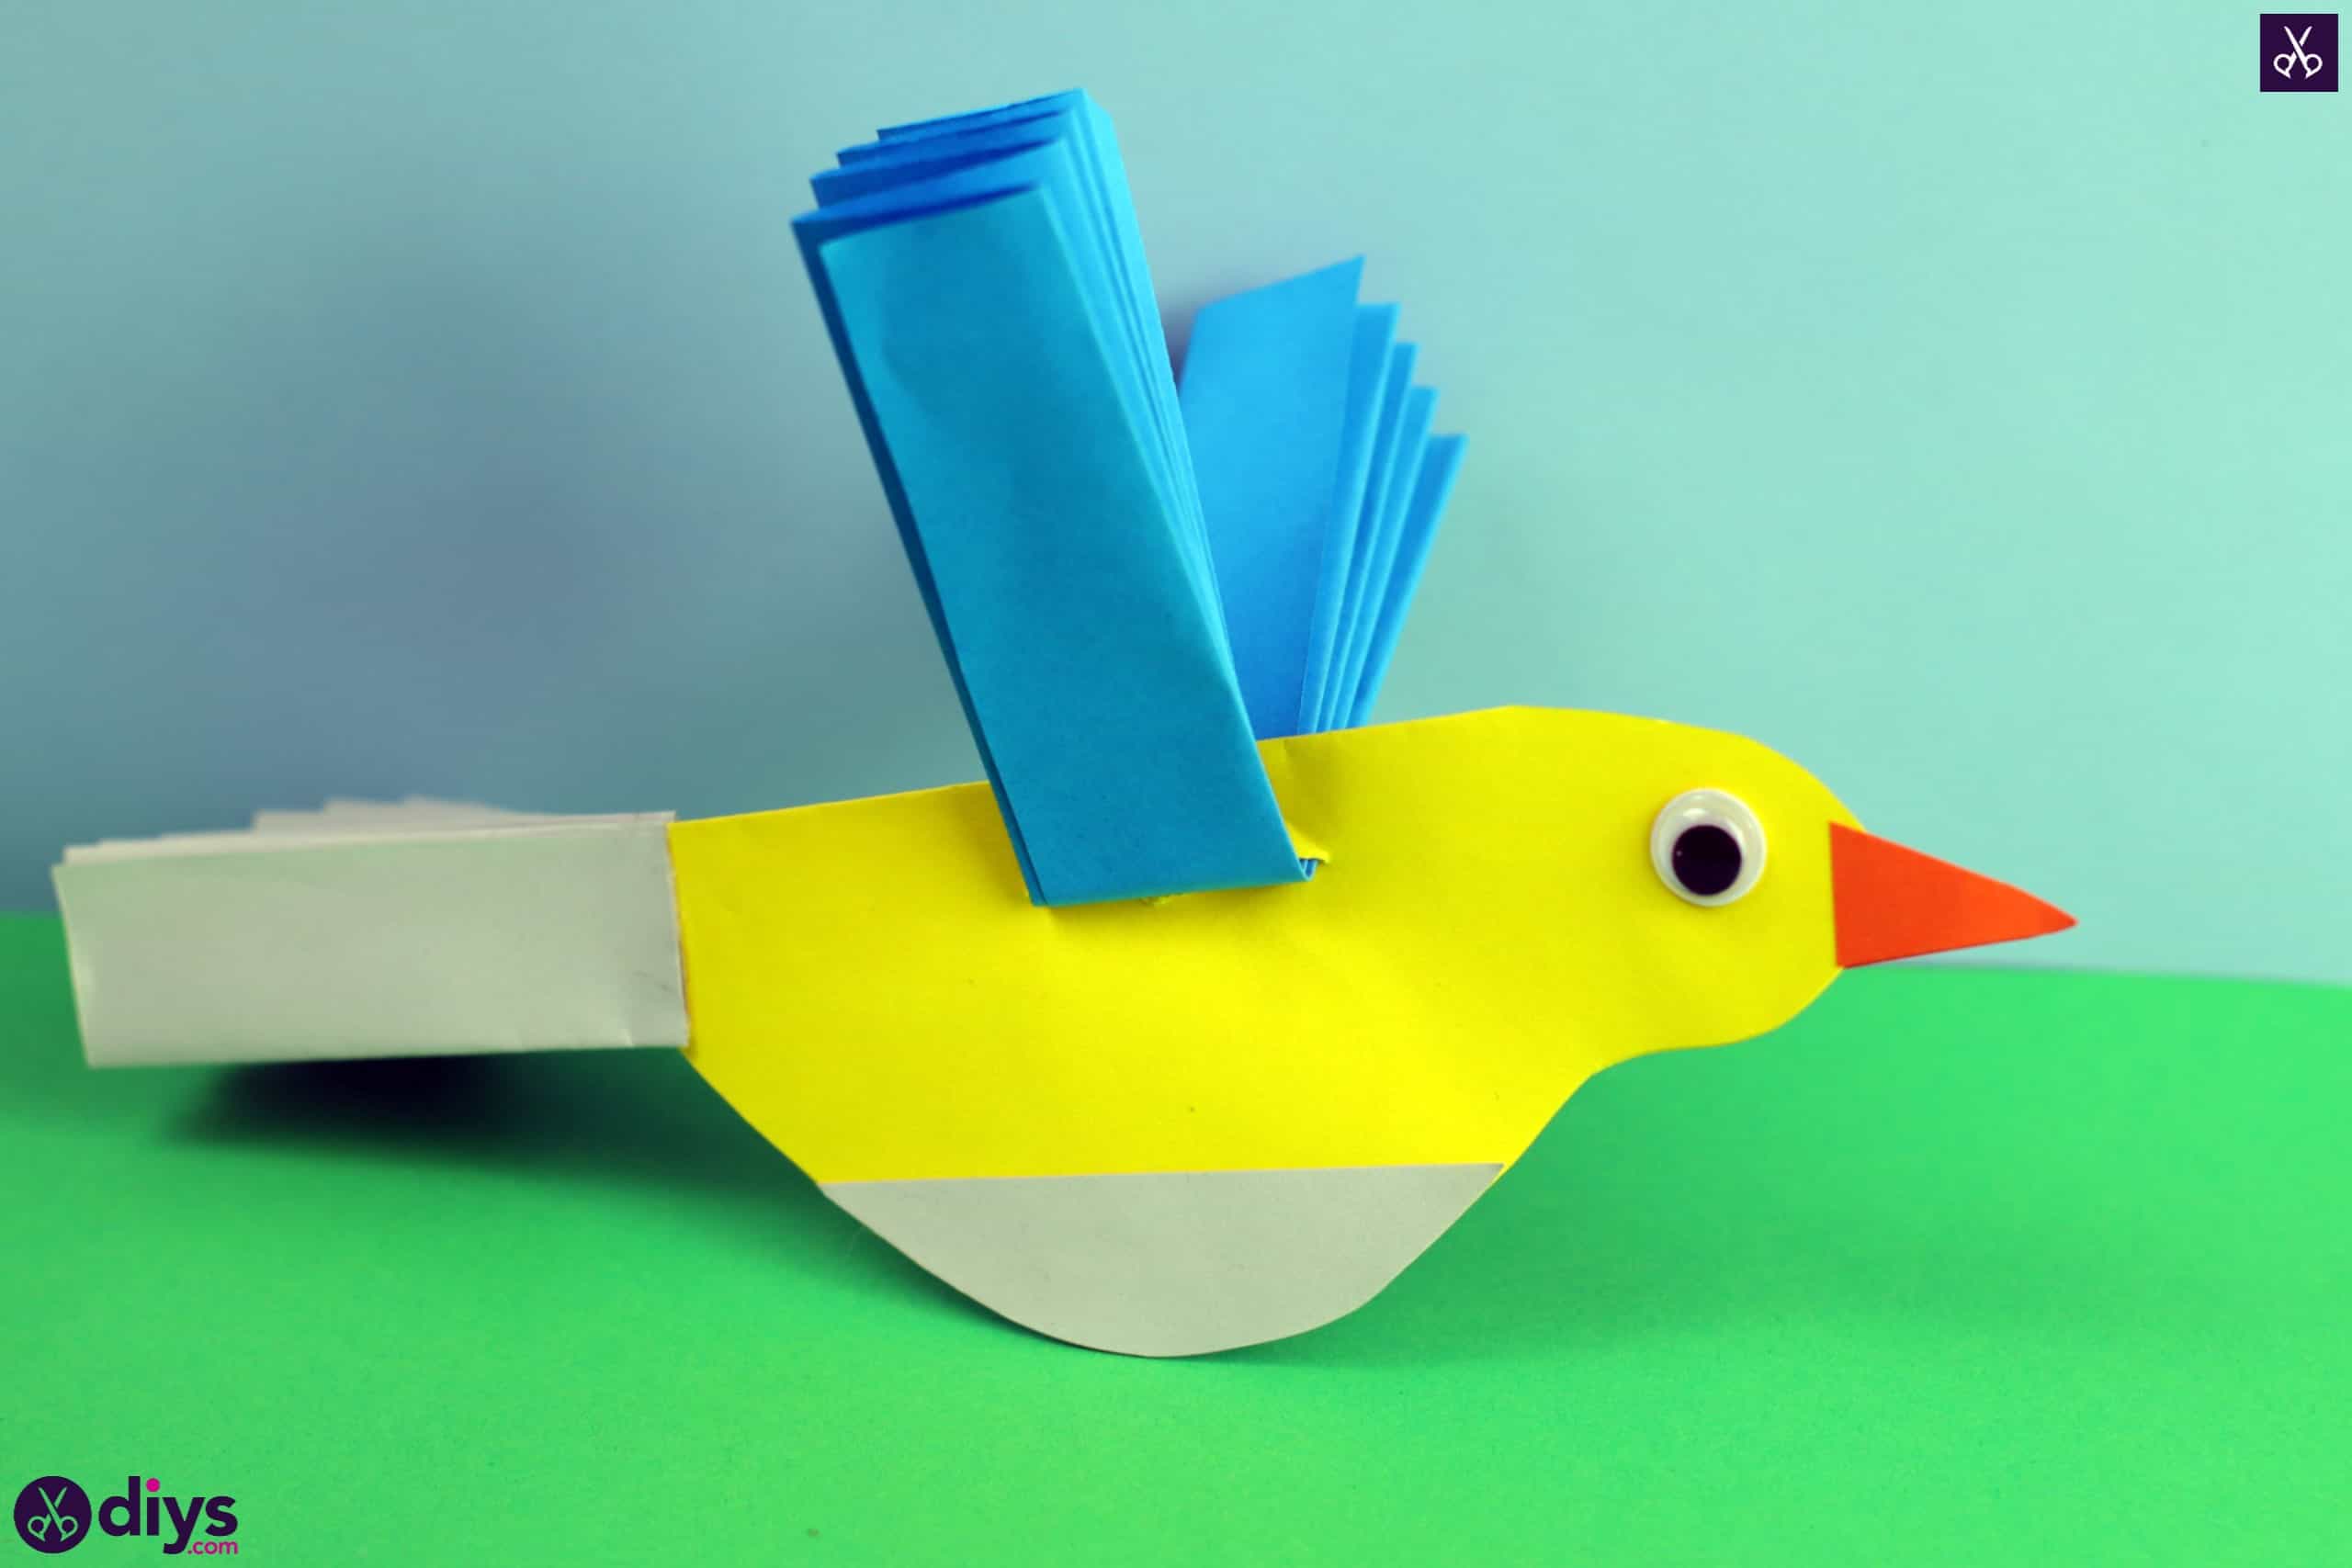 Diy easy paper bird